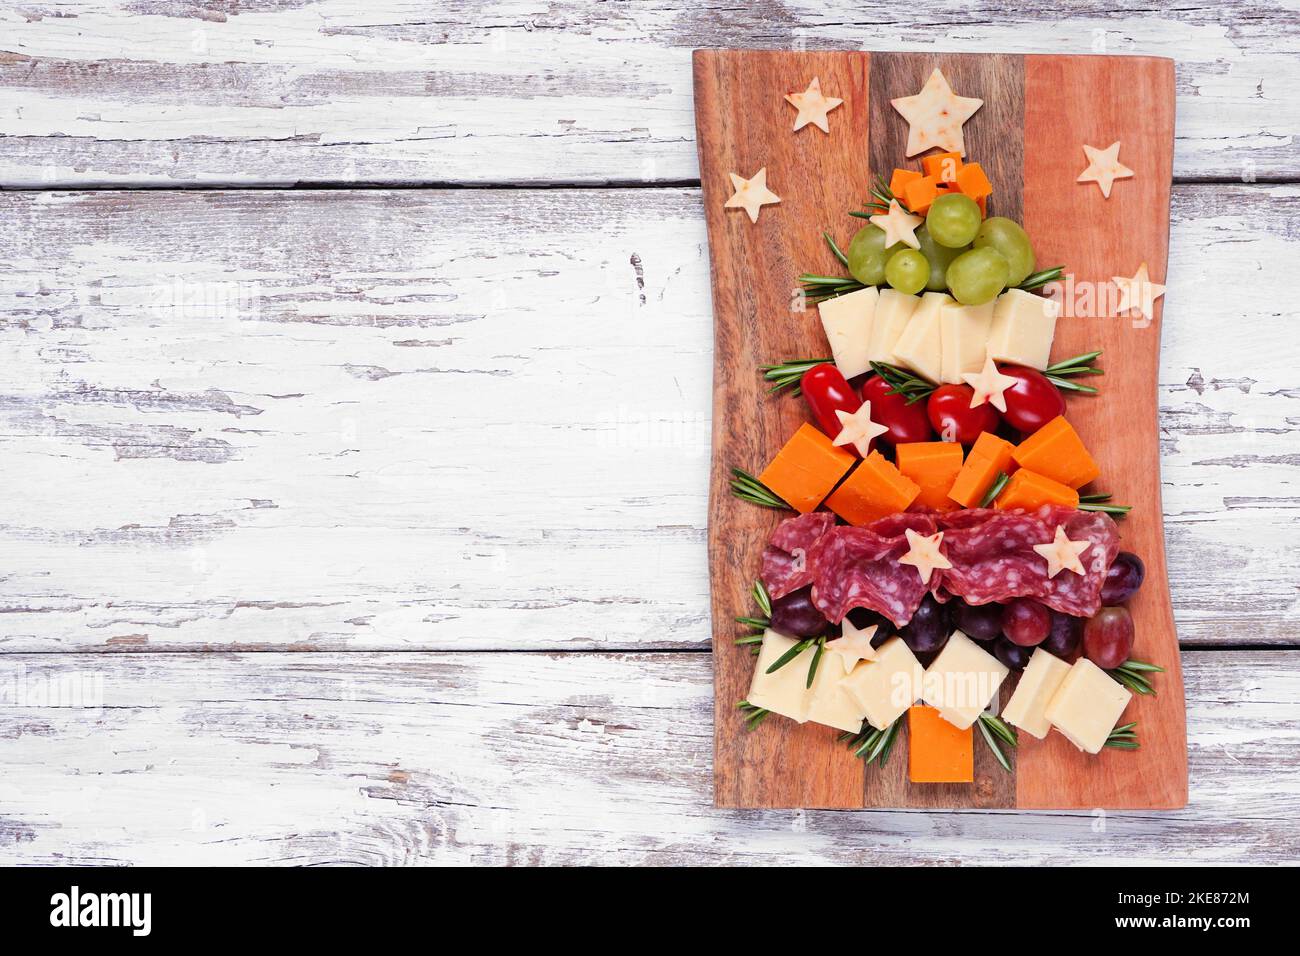 Weihnachtsbaum Charcuterie Board. Blick über einen weißen Holzhintergrund. Auswahl an Käse- und Fleischgerichten. Stockfoto